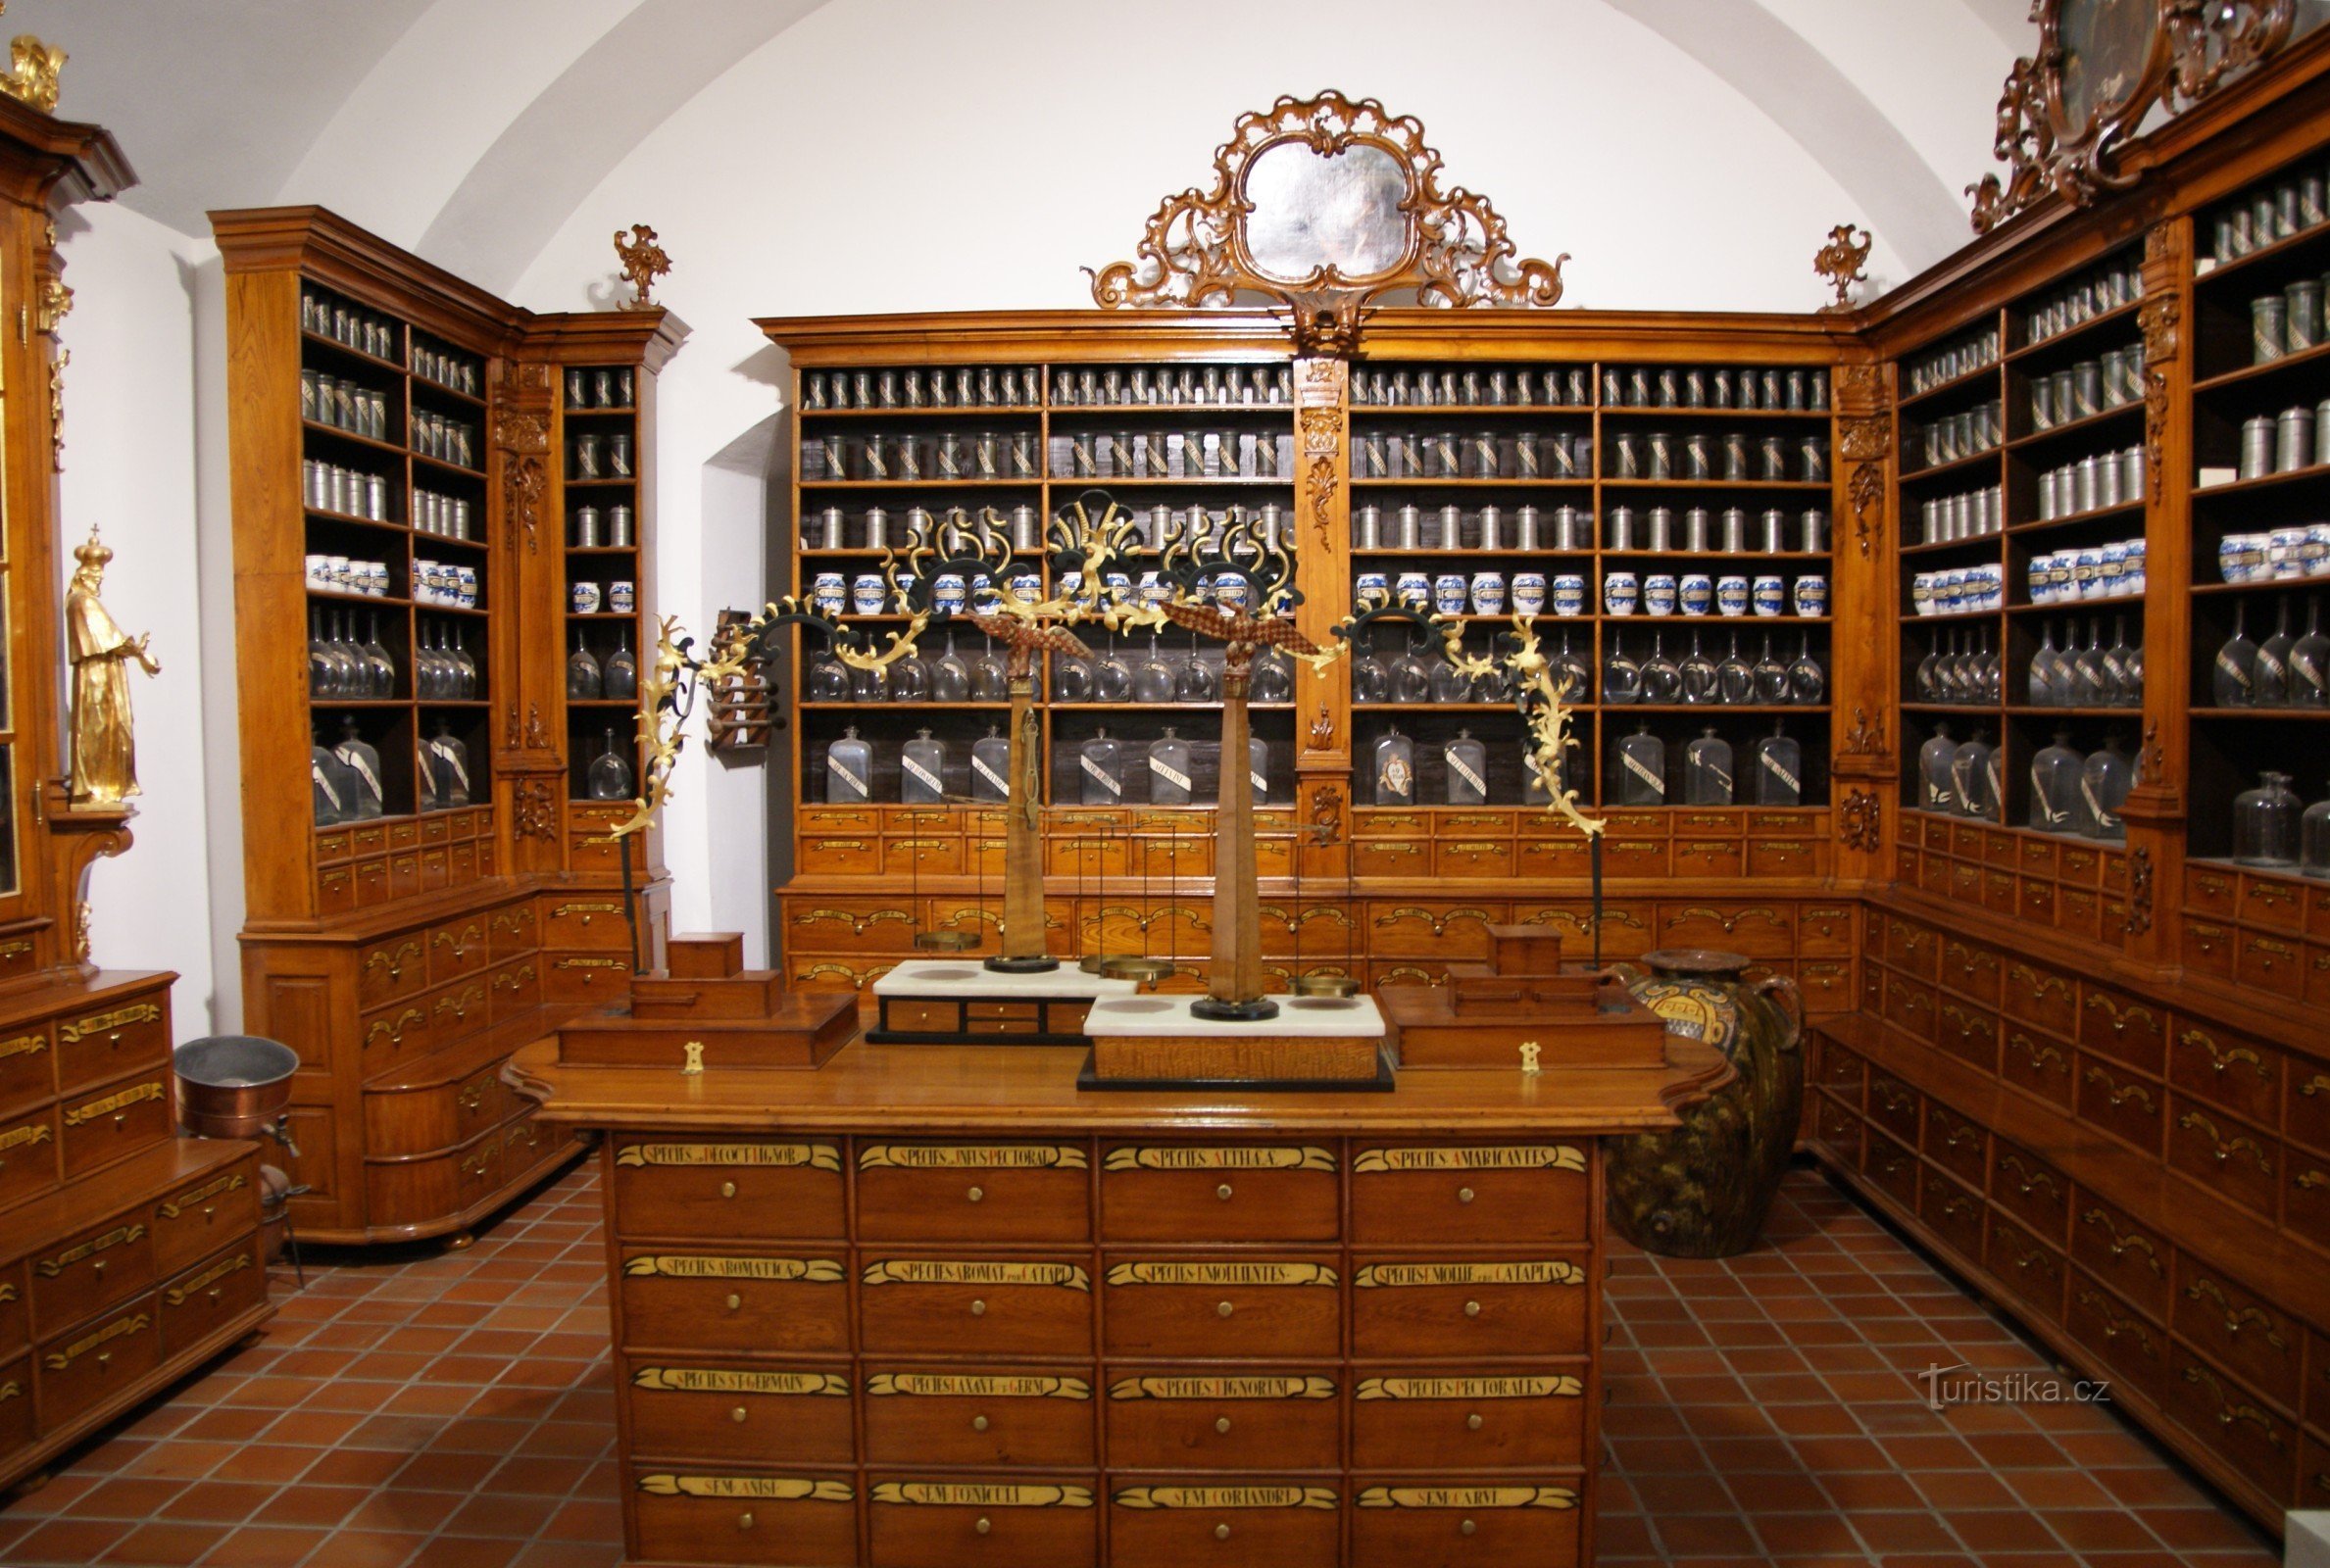 ブルノ (シュピルベルク) – バロック様式の薬局